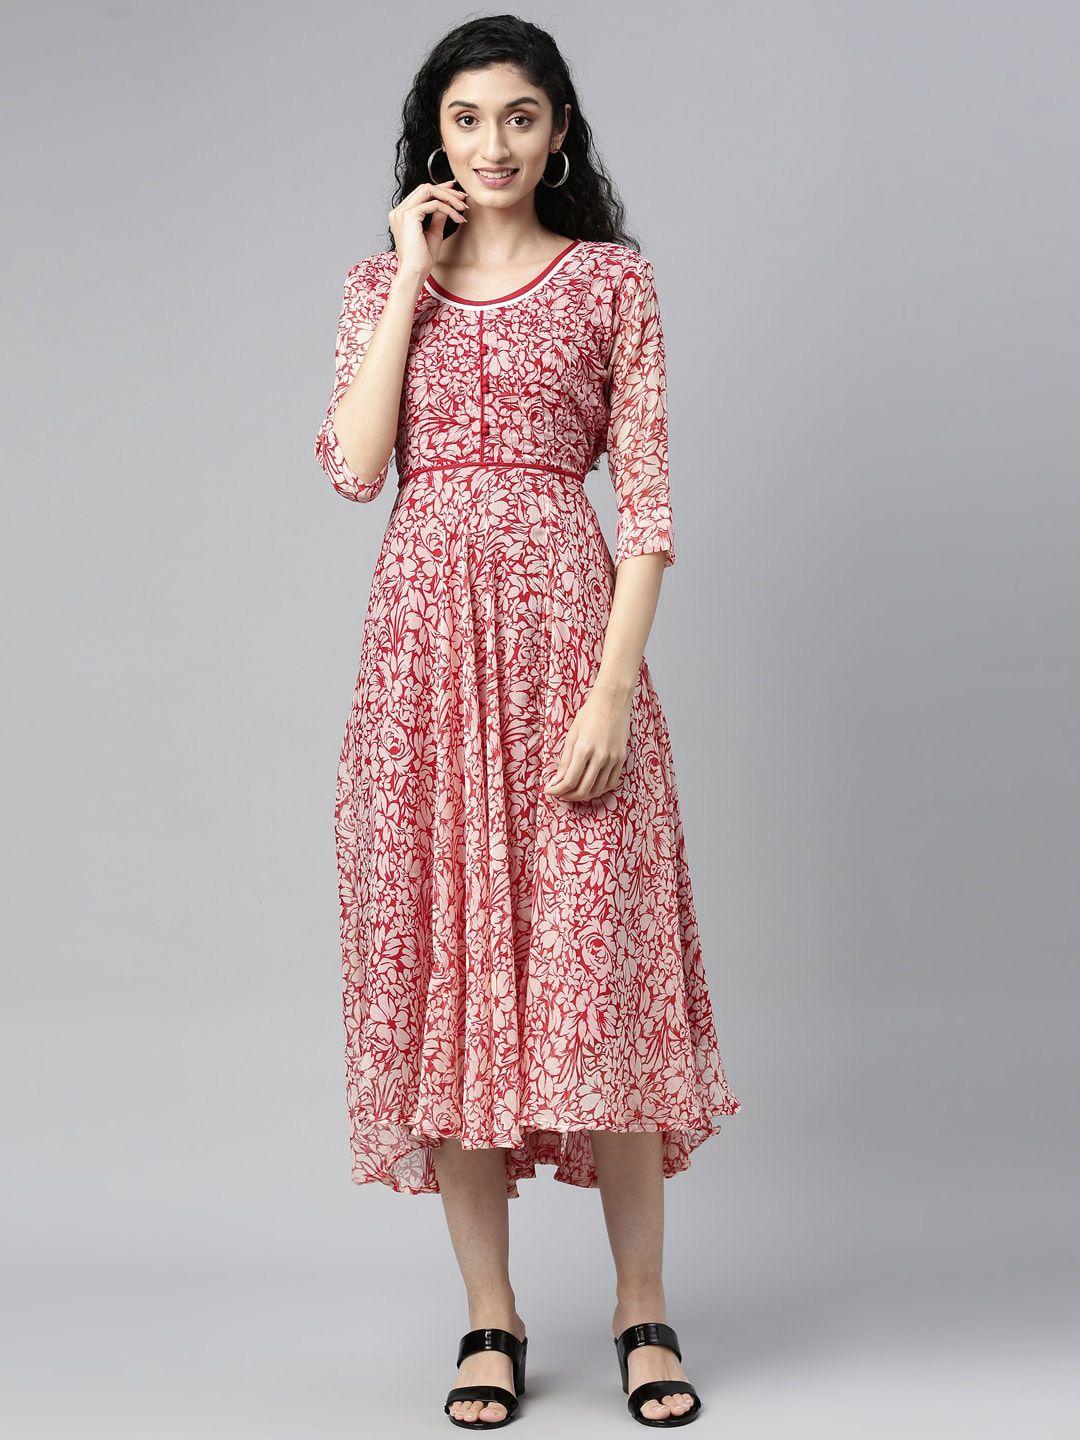 souchii-white-&-red-floral-layered-chiffon-midi-dress